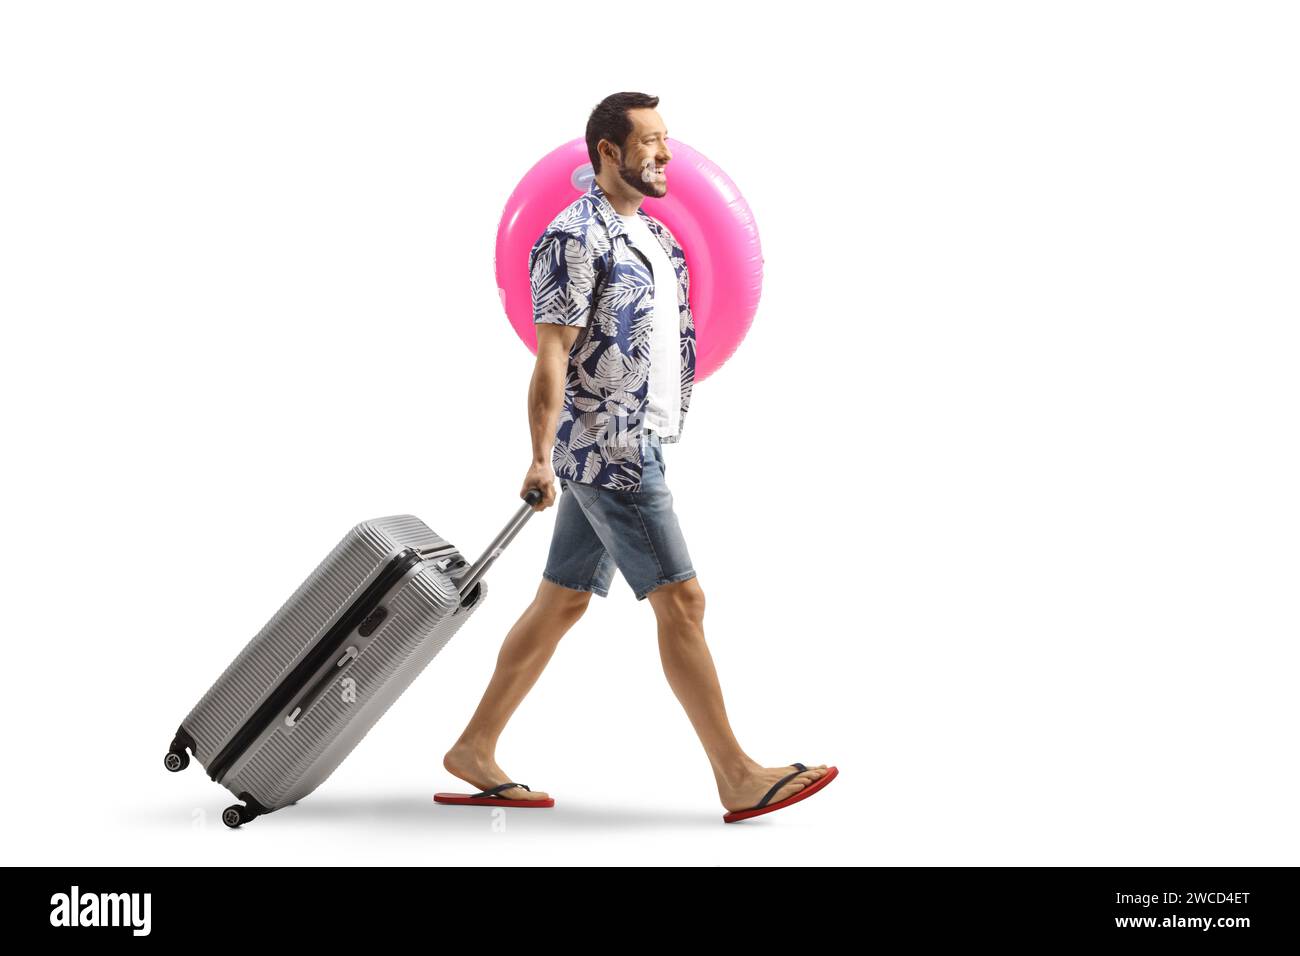 Homme tirant une valise souriante et portant un anneau de natation isolé sur fond blanc Banque D'Images